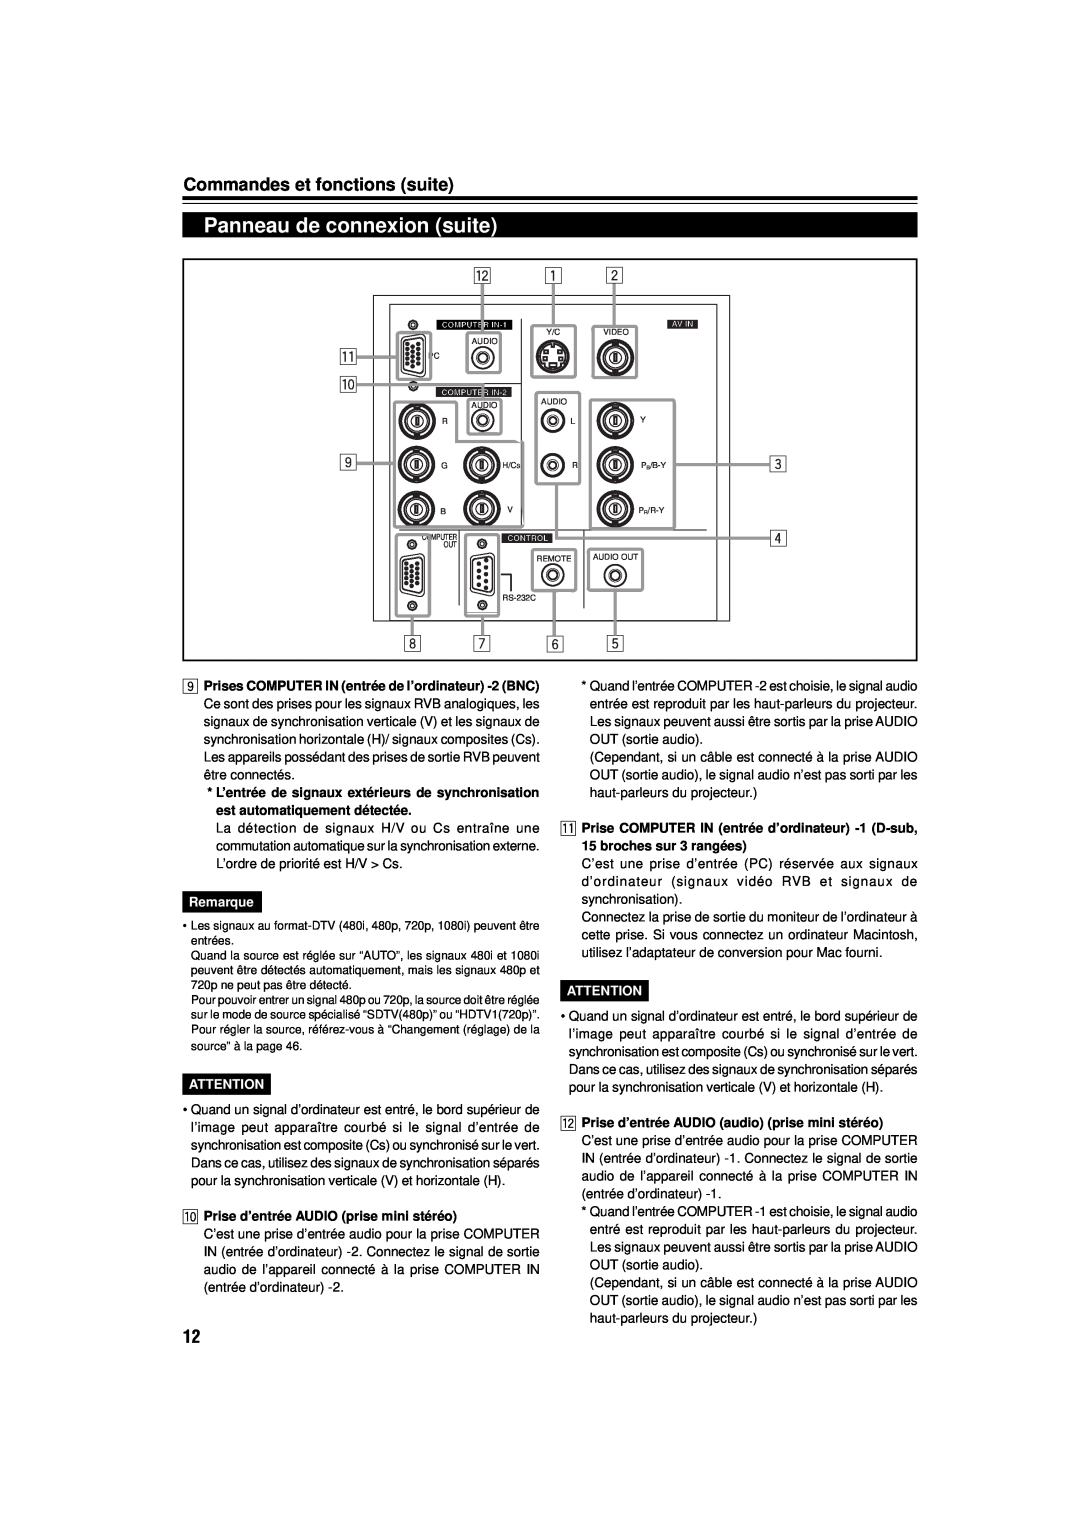 JVC DLA-M15U Panneau de connexion suite, Commandes et fonctions suite, Remarque, p Prise d’entrée AUDIO prise mini stéréo 